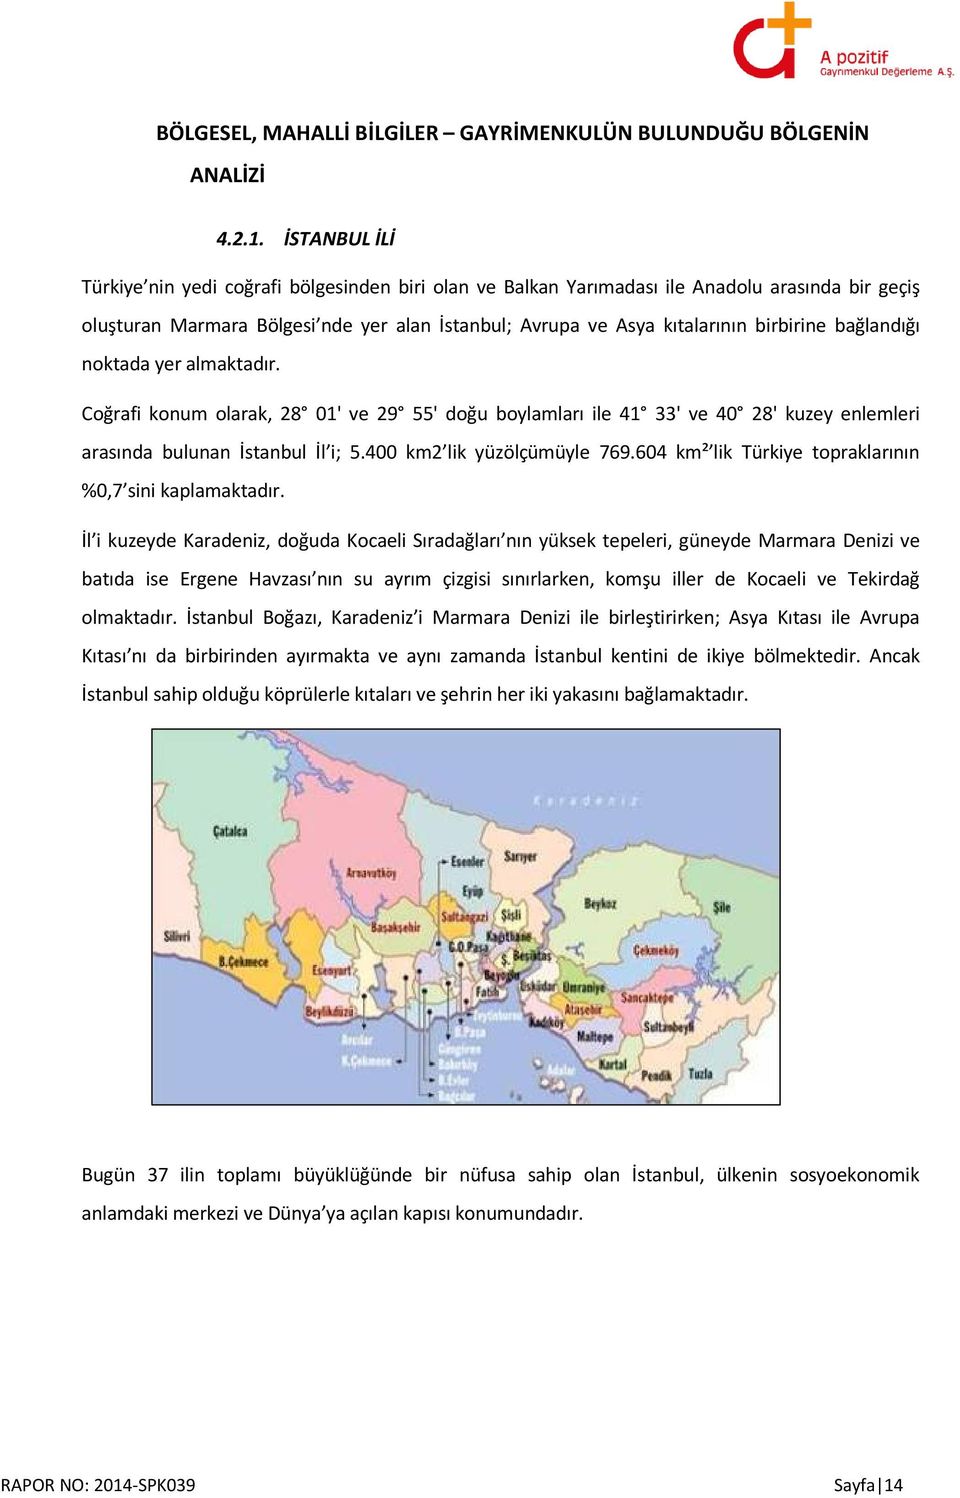 bağlandığı noktada yer almaktadır. Coğrafi konum olarak, 28 01' ve 29 55' doğu boylamları ile 41 33' ve 40 28' kuzey enlemleri arasında bulunan İstanbul İl i; 5.400 km2 lik yüzölçümüyle 769.